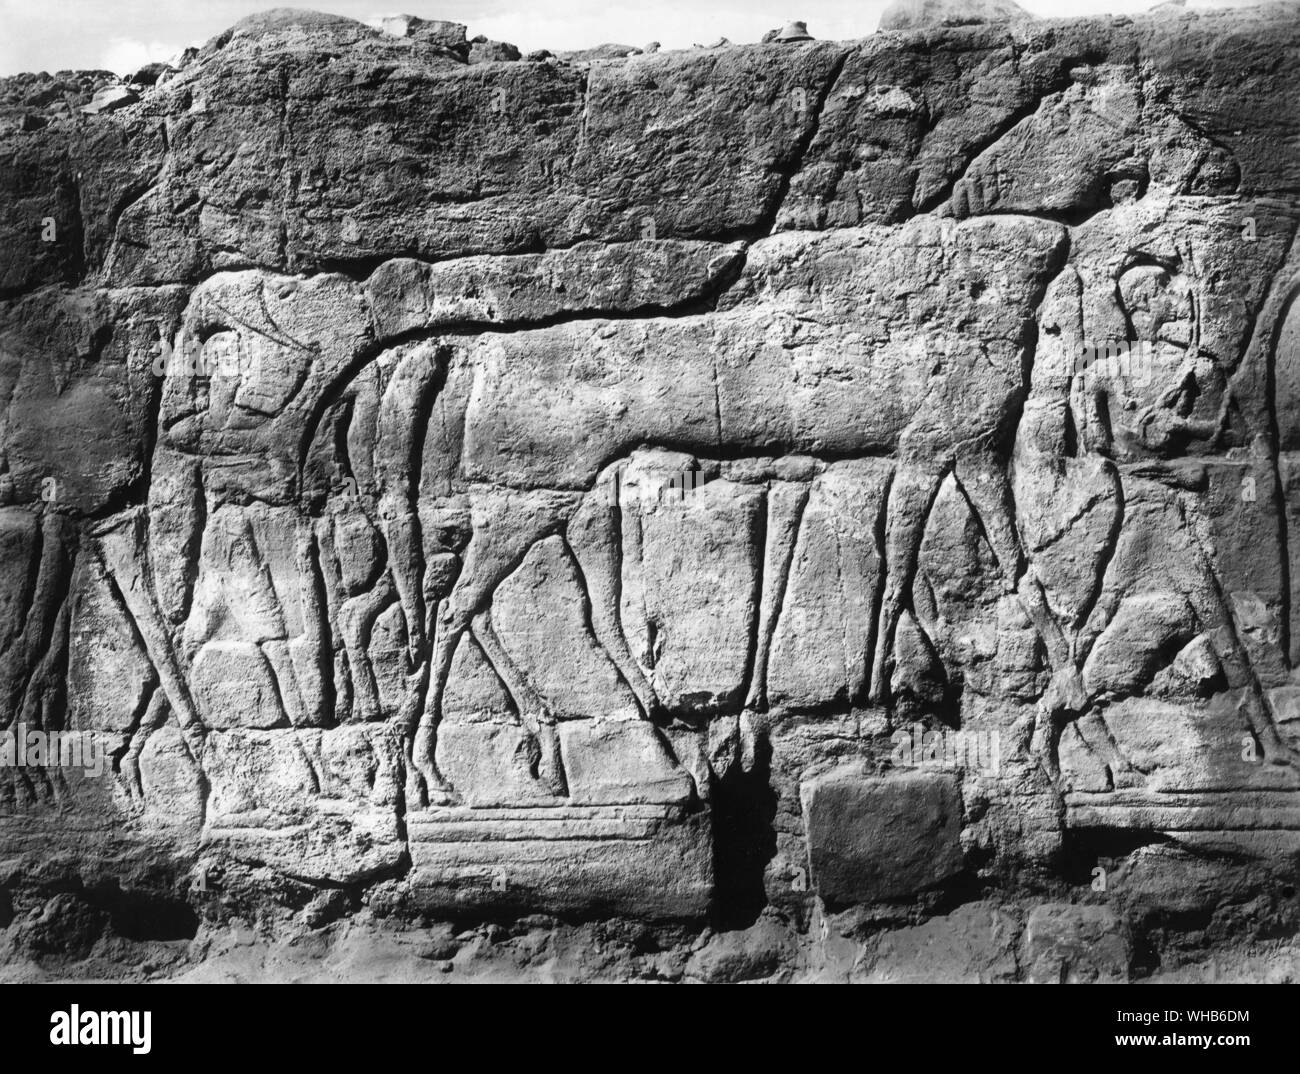 Gli uomini che portano i cavalli re Piankhy re etiope XXV dinastia Gebel Barkal Tempio (Sudan) Alto Egitto periodo tardo - Piye, il cui nome era una volta traslitterato come Py(ankh)i. (D. 721 BC) era un re Kushite e fondatore della XXV dinastia egizia che governarono l'Egitto dalla città di Napata, situata nel profondo di Nubia, Sudan. . Foto Stock